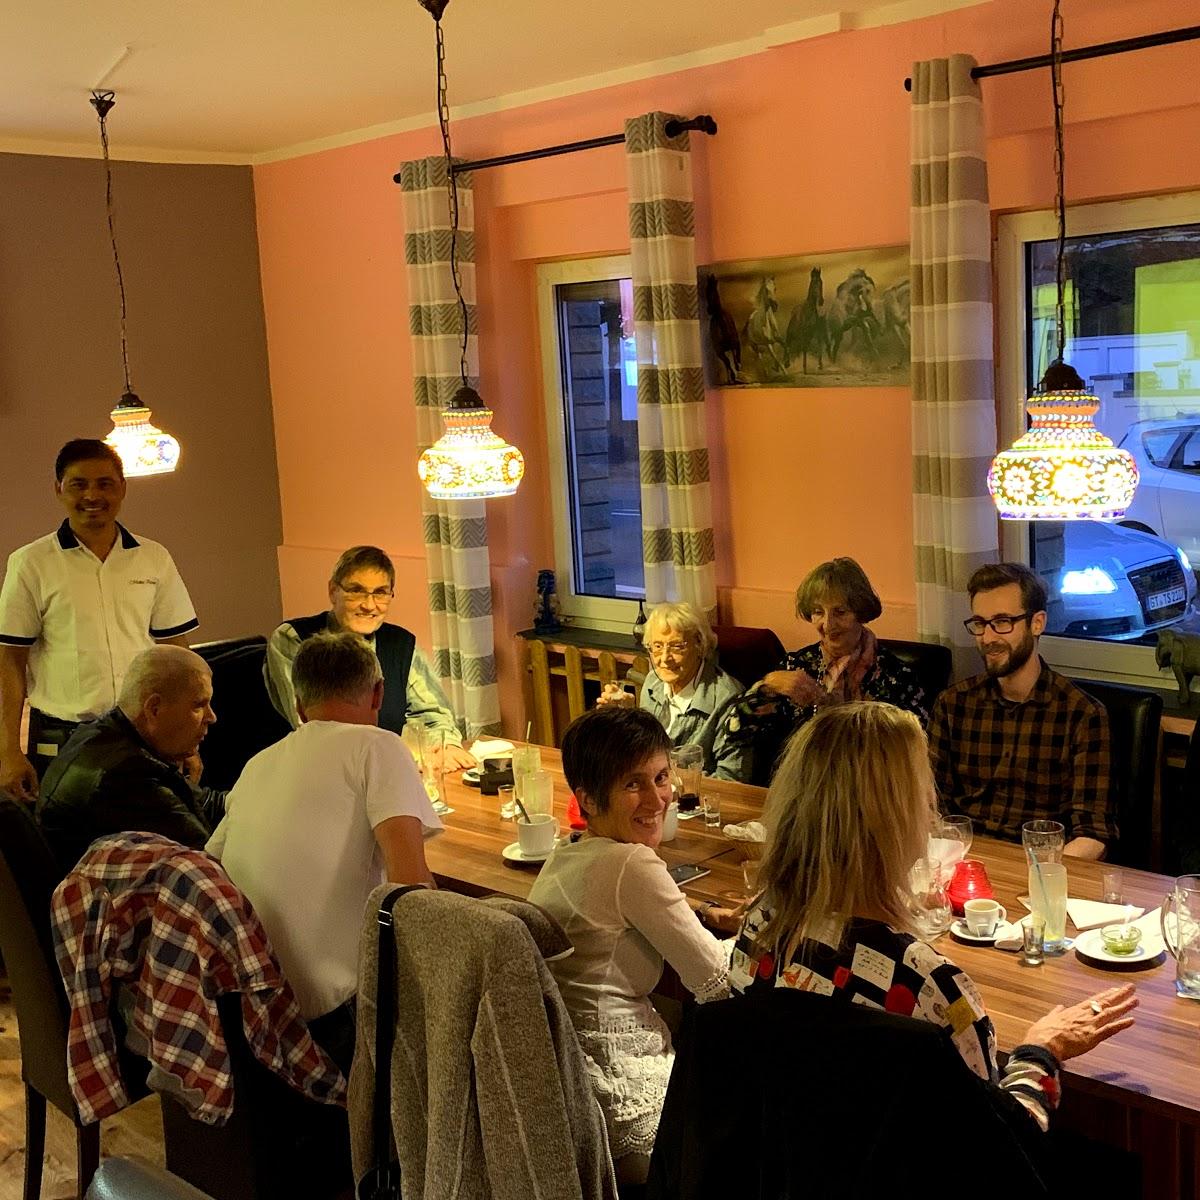 Restaurant "Modhu kitchen - Indische Tandoor" in Lippstadt